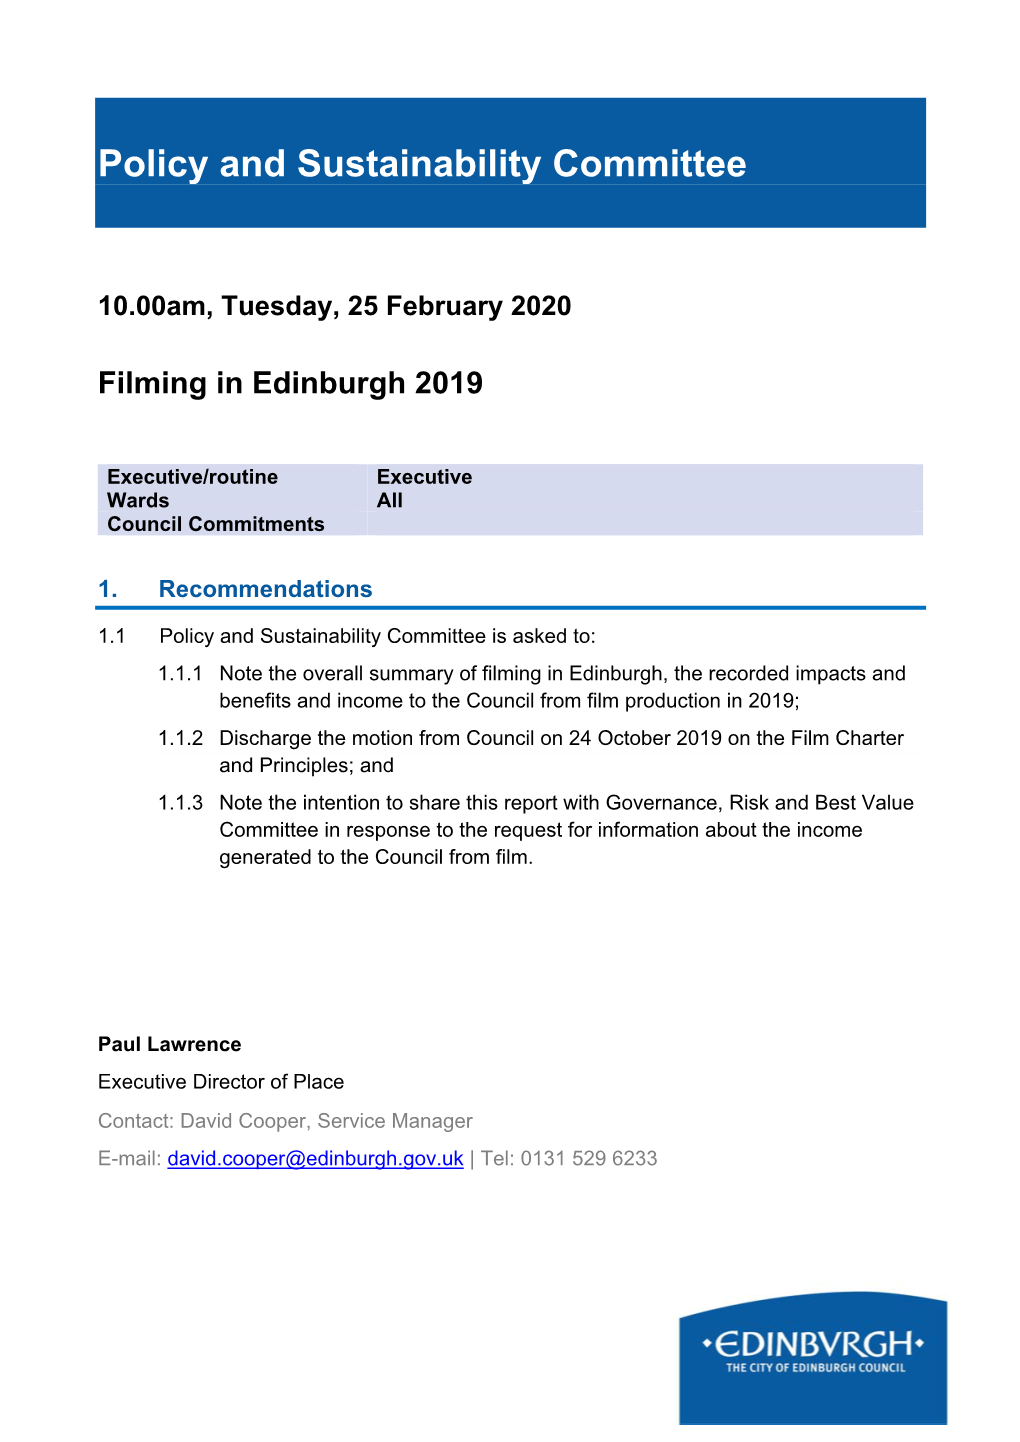 Filming in Edinburgh 2019